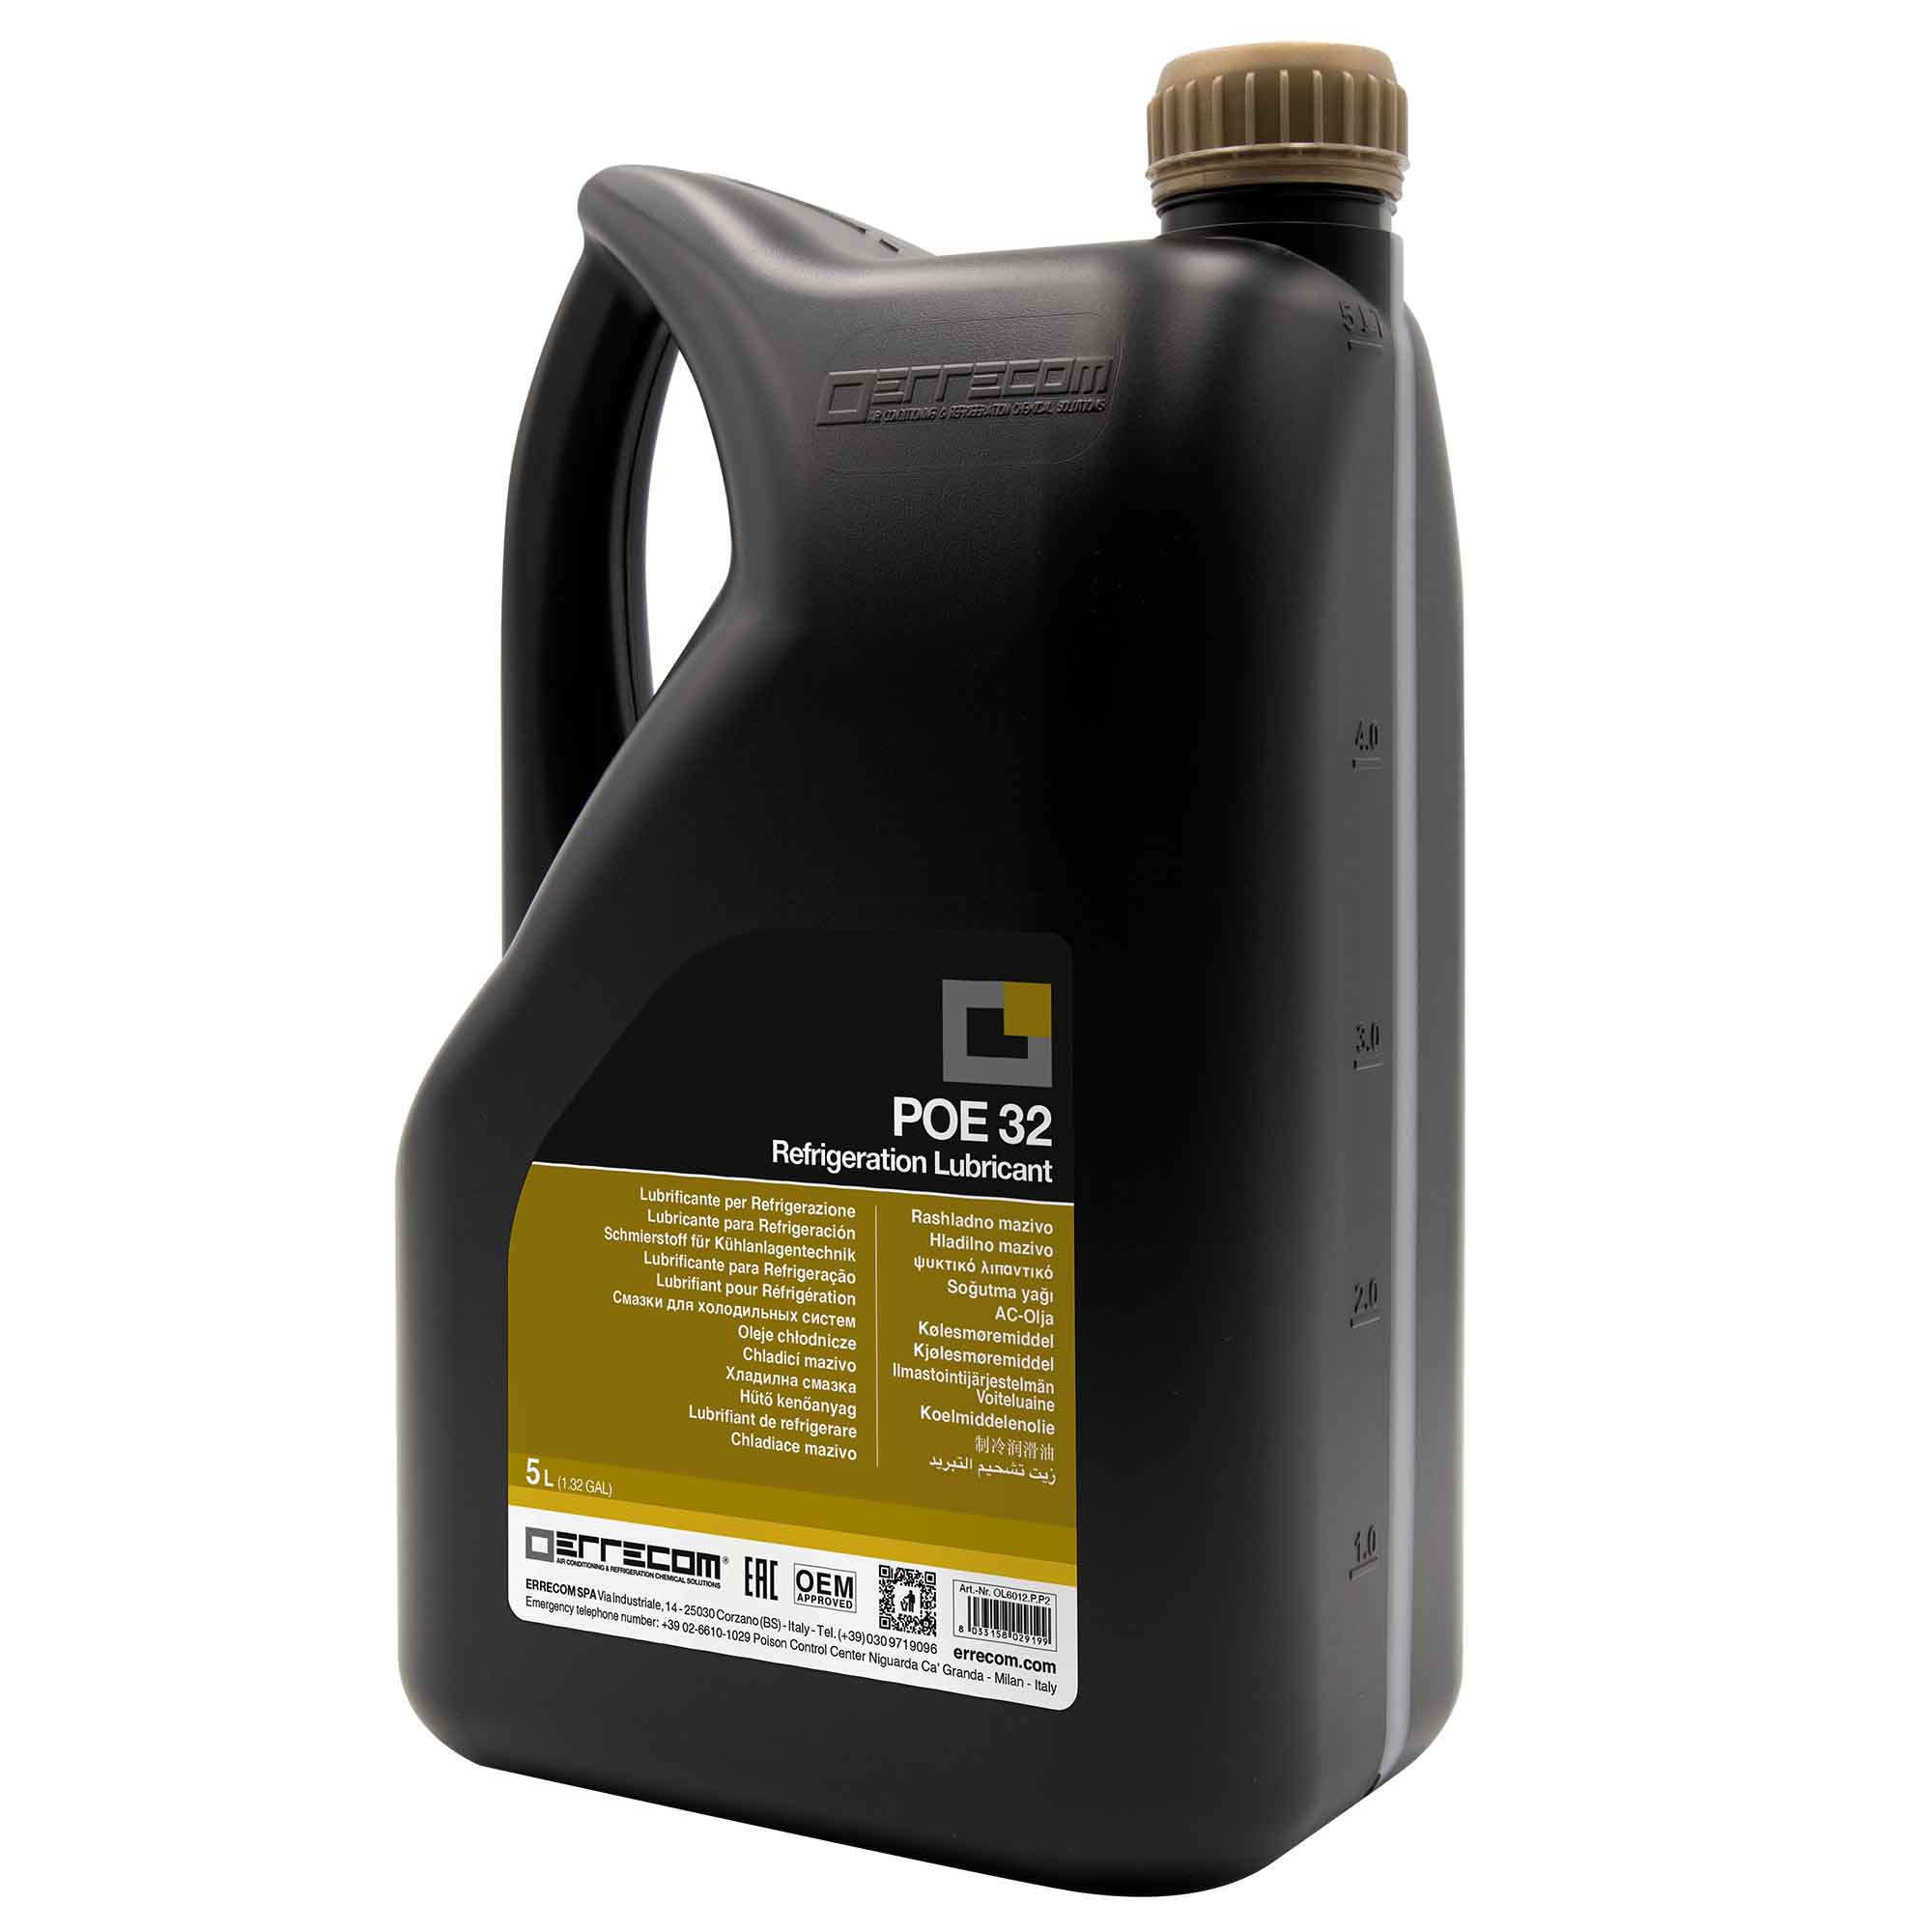 2 x Olio lubrificante R&AC Polyol Estere (POE) Errecom 32 - Tanica in Plastica da 5 lt. - Confezione n° 2 pz. (totale 10 litri)